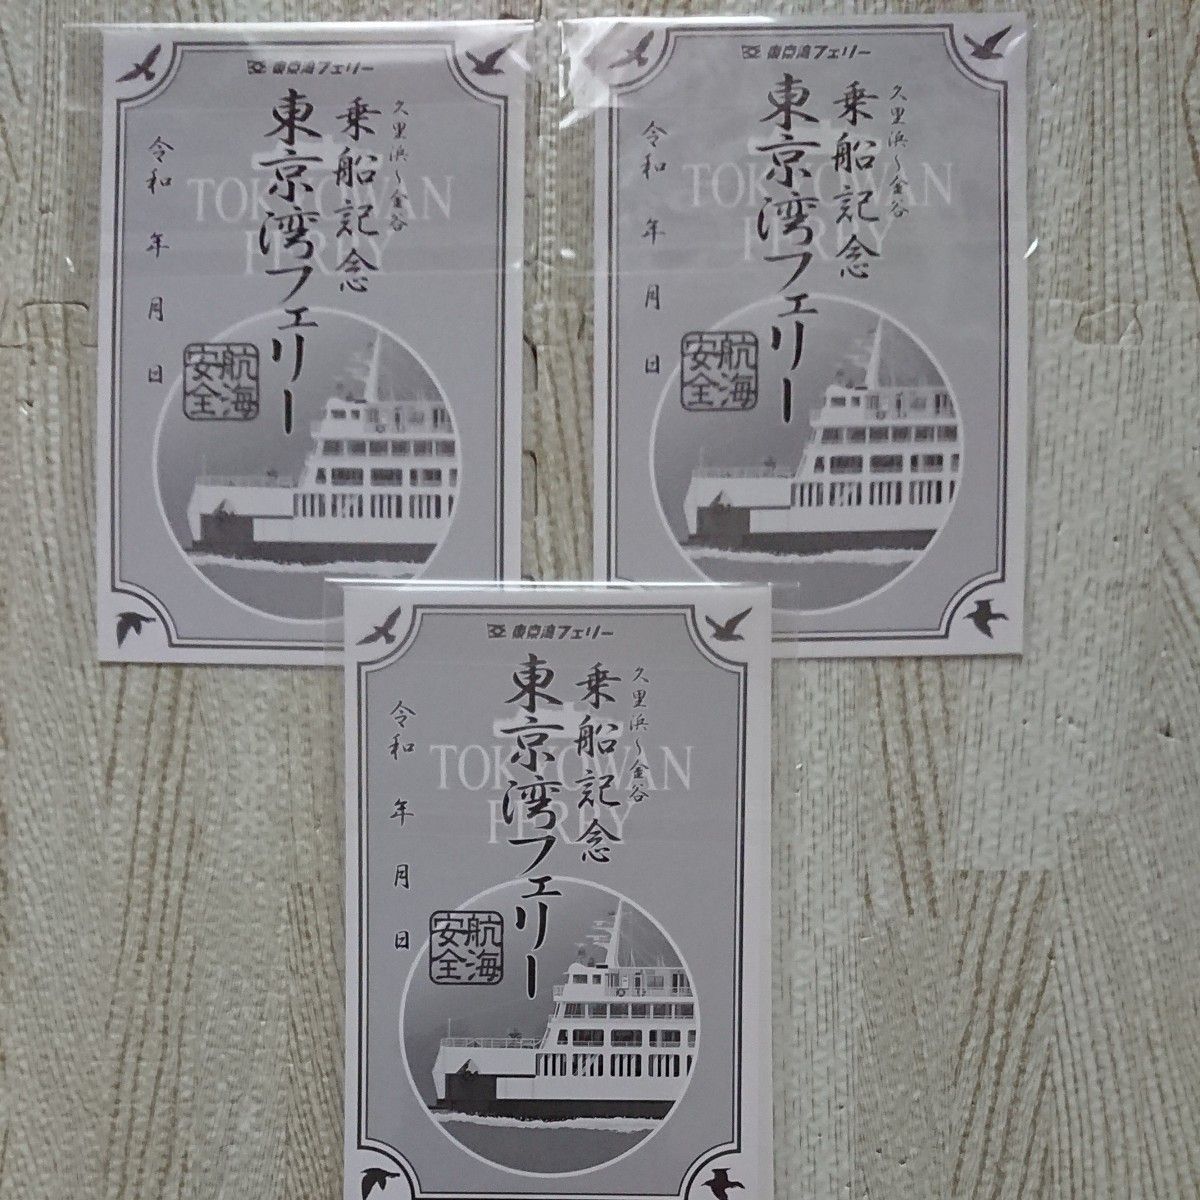 東京湾フェリー 御船印